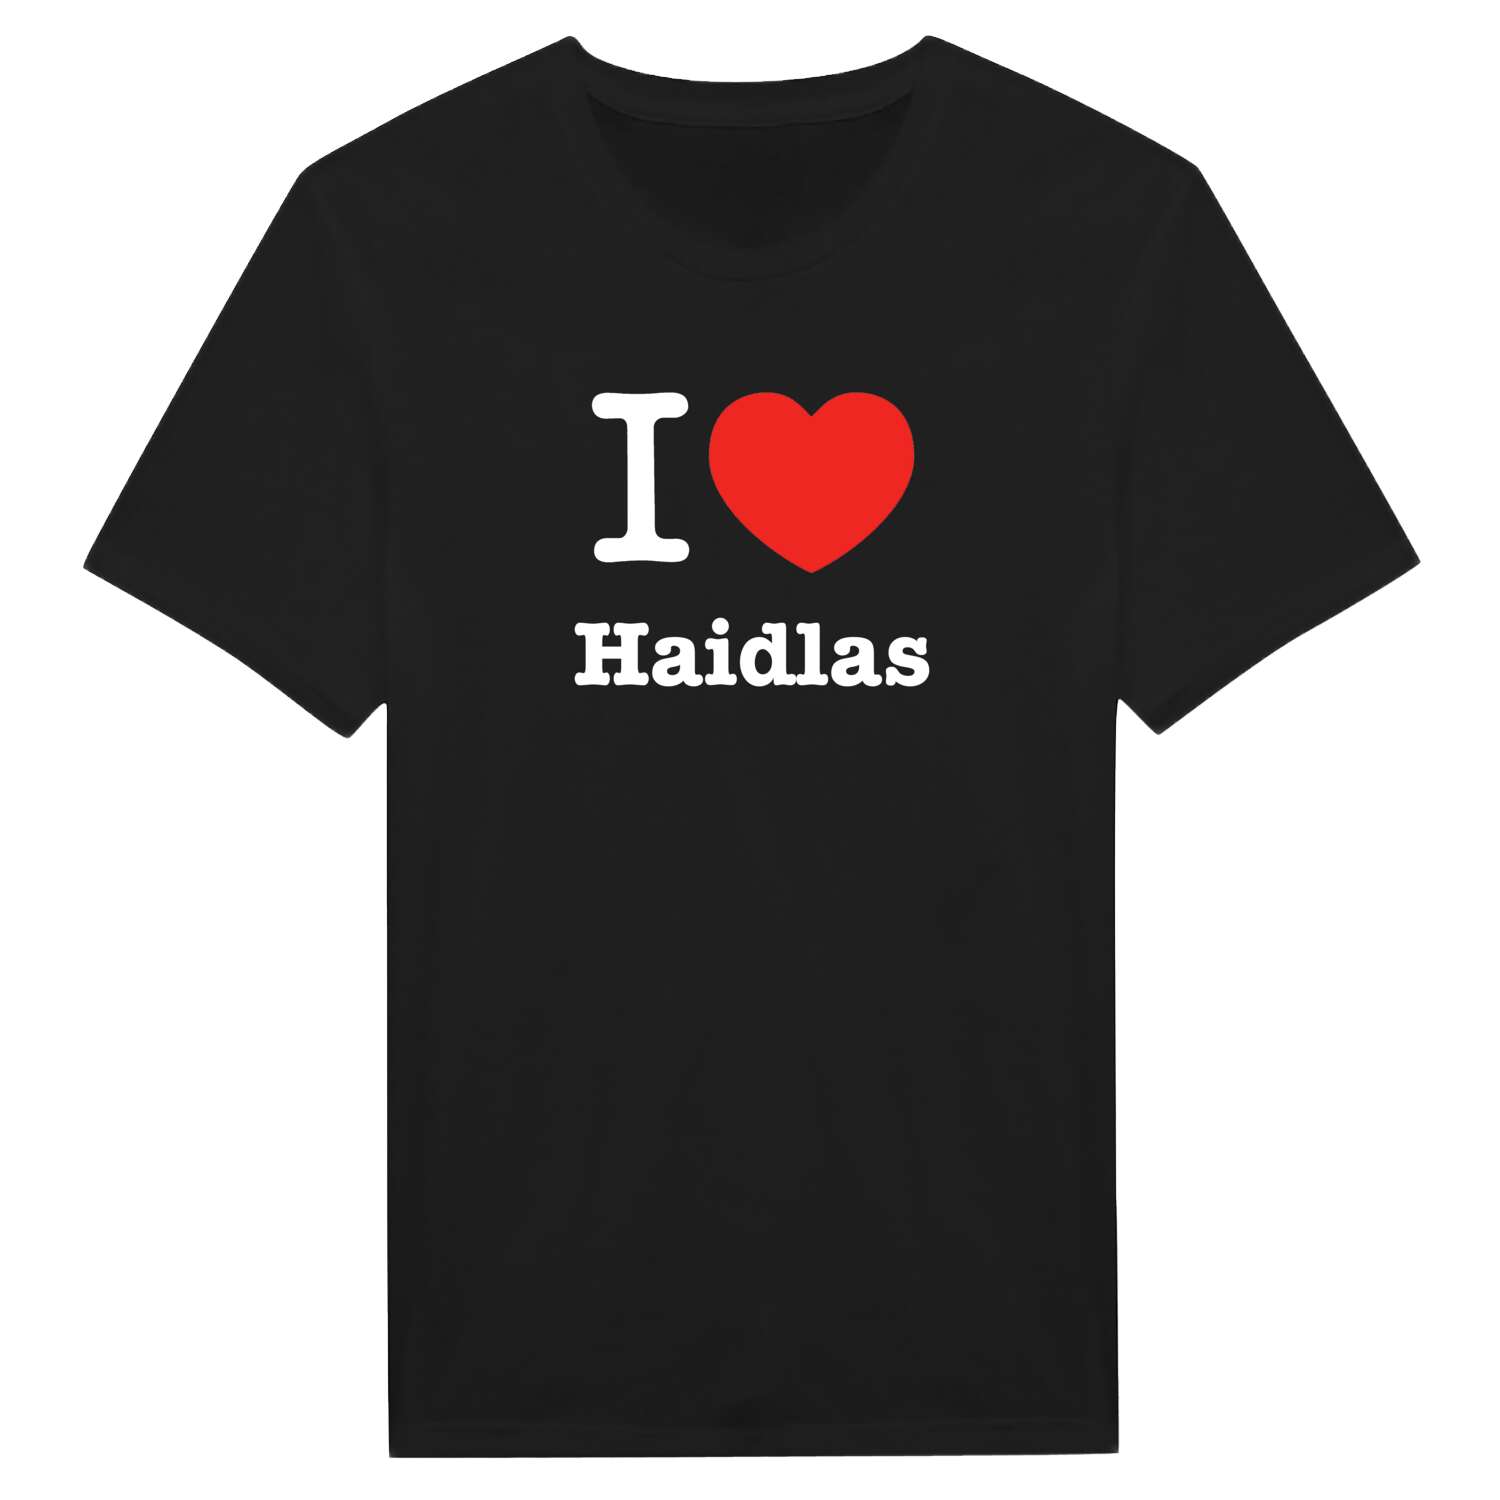 Haidlas T-Shirt »I love«